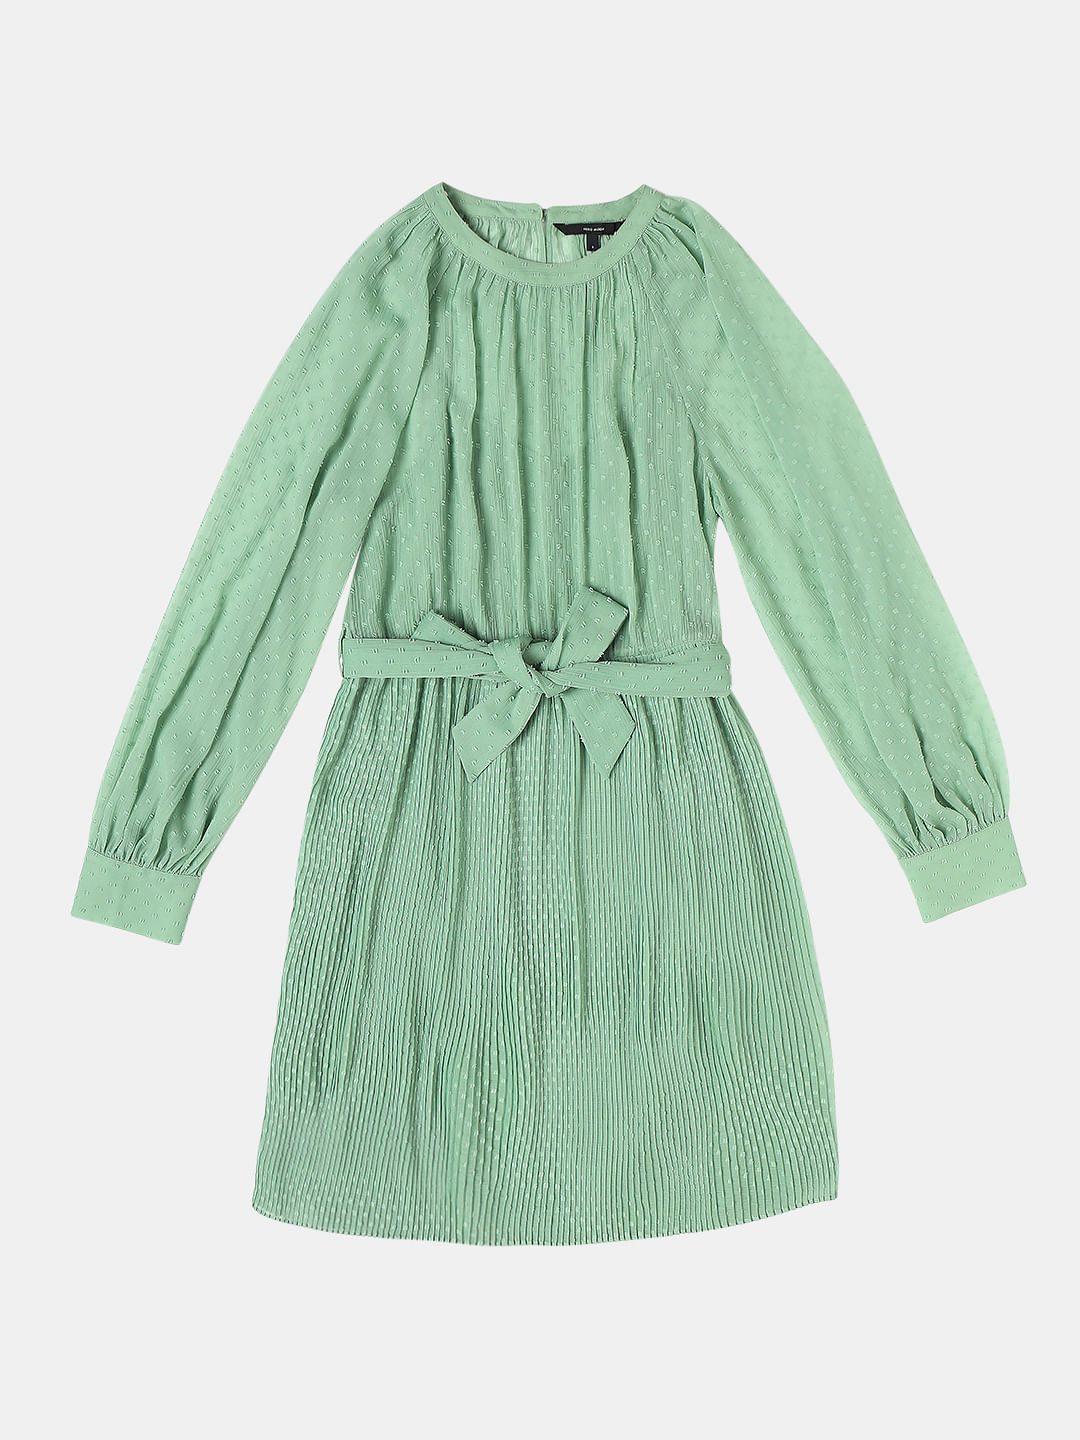 Green Georgette Pleated Dress|181612301